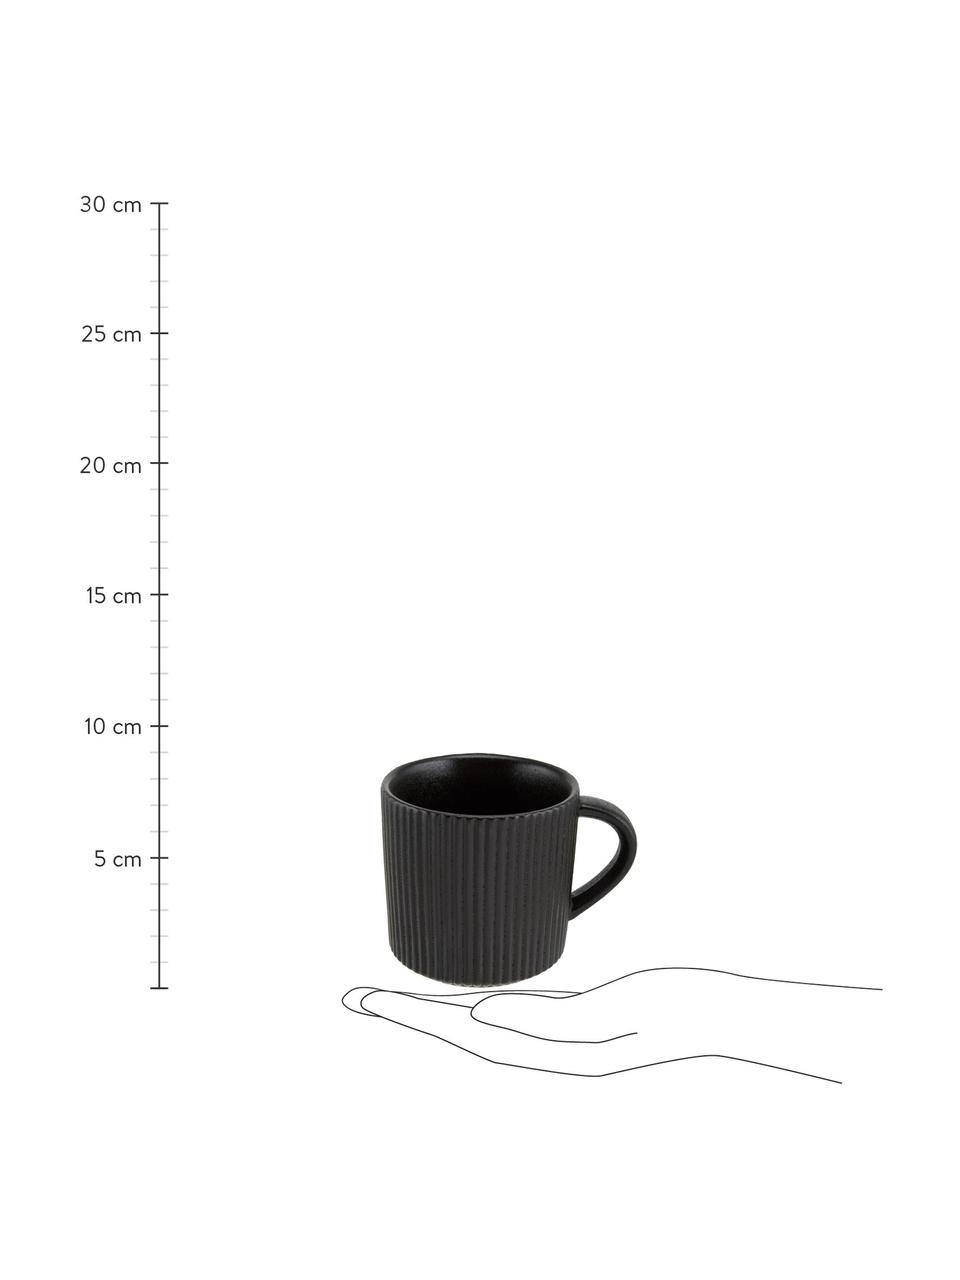 Tassen Neri mit Rillenstruktur in Schwarz matt, 2 Stück, Steingut
Mit Rillenstruktur und leicht rauer Oberfläche, Schwarz, Ø 9 x H 9 cm, 350 ml